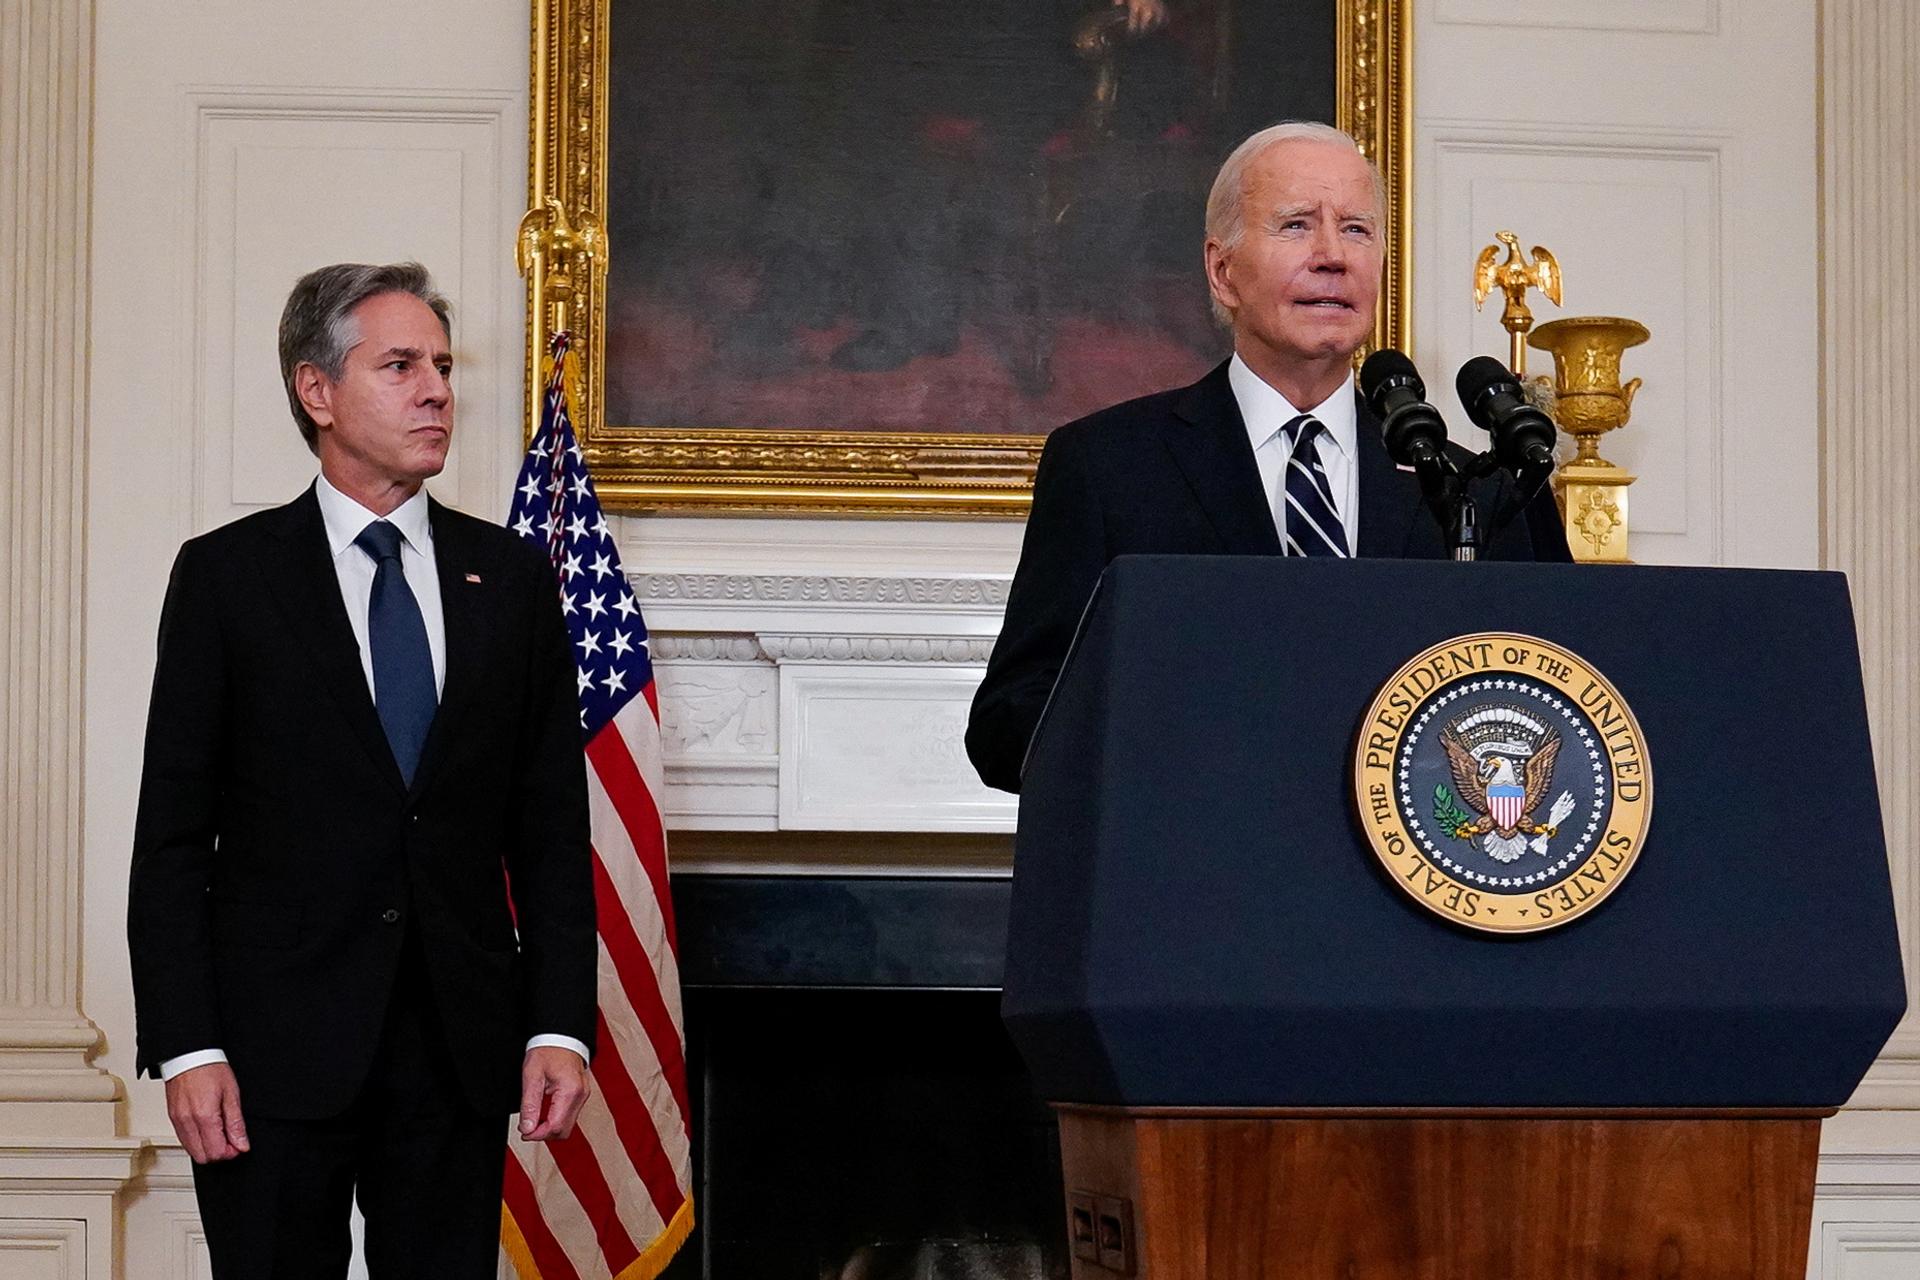 U.S. President Joe Biden speaks at the White House.